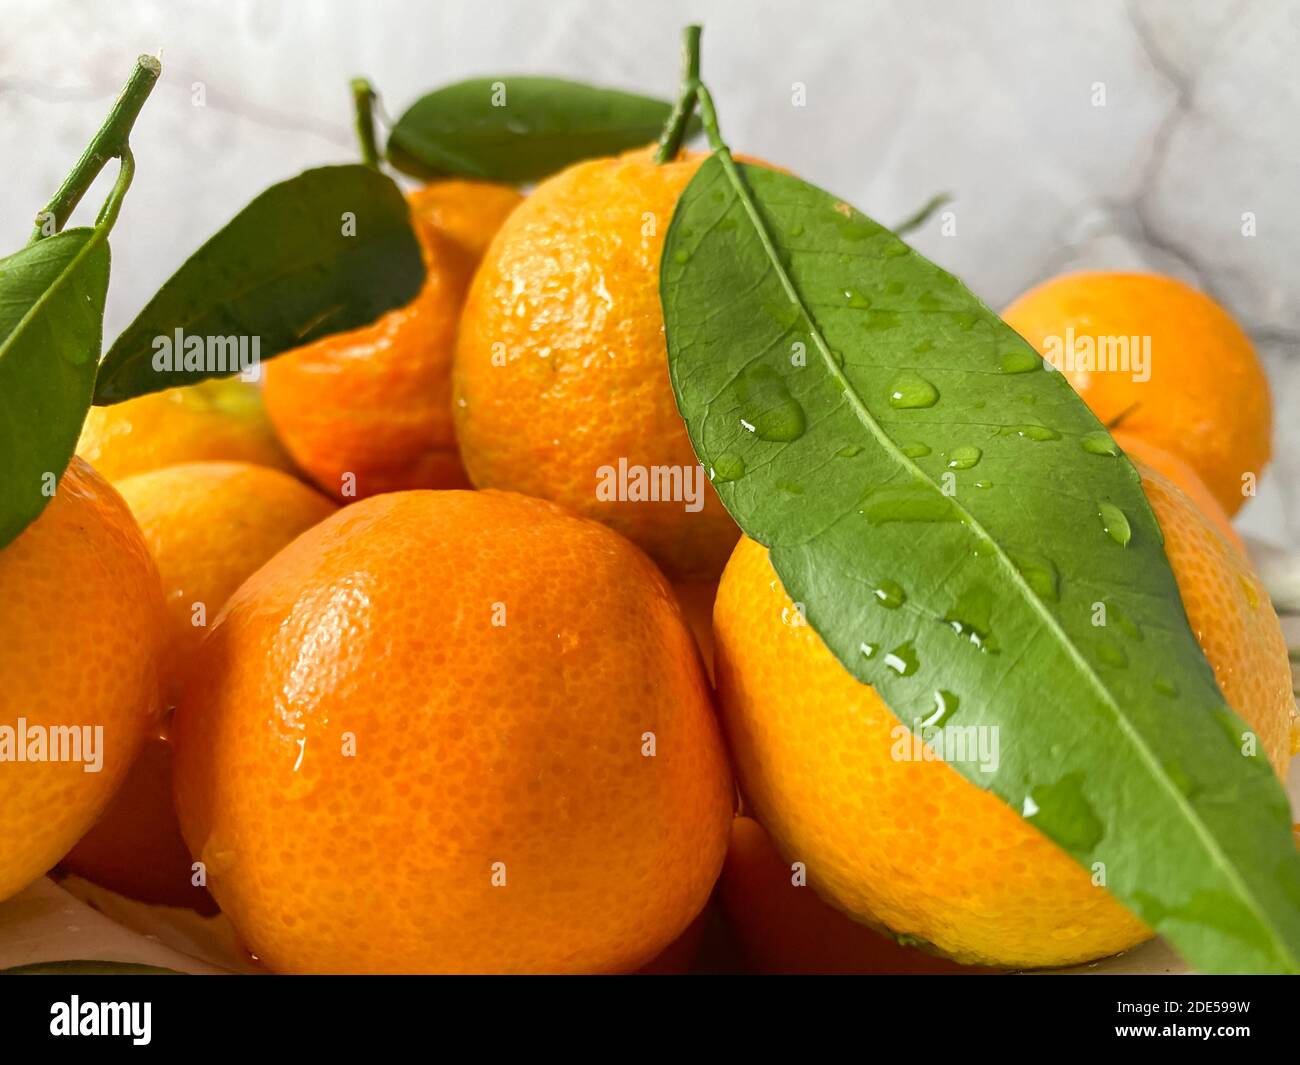 Frische Mandarinen Orangen Früchte oder Mandarinen mit Blättern auf dem Tisch.Frische saftige Clementine Mandarinen, Winterfrüchte Stockfoto